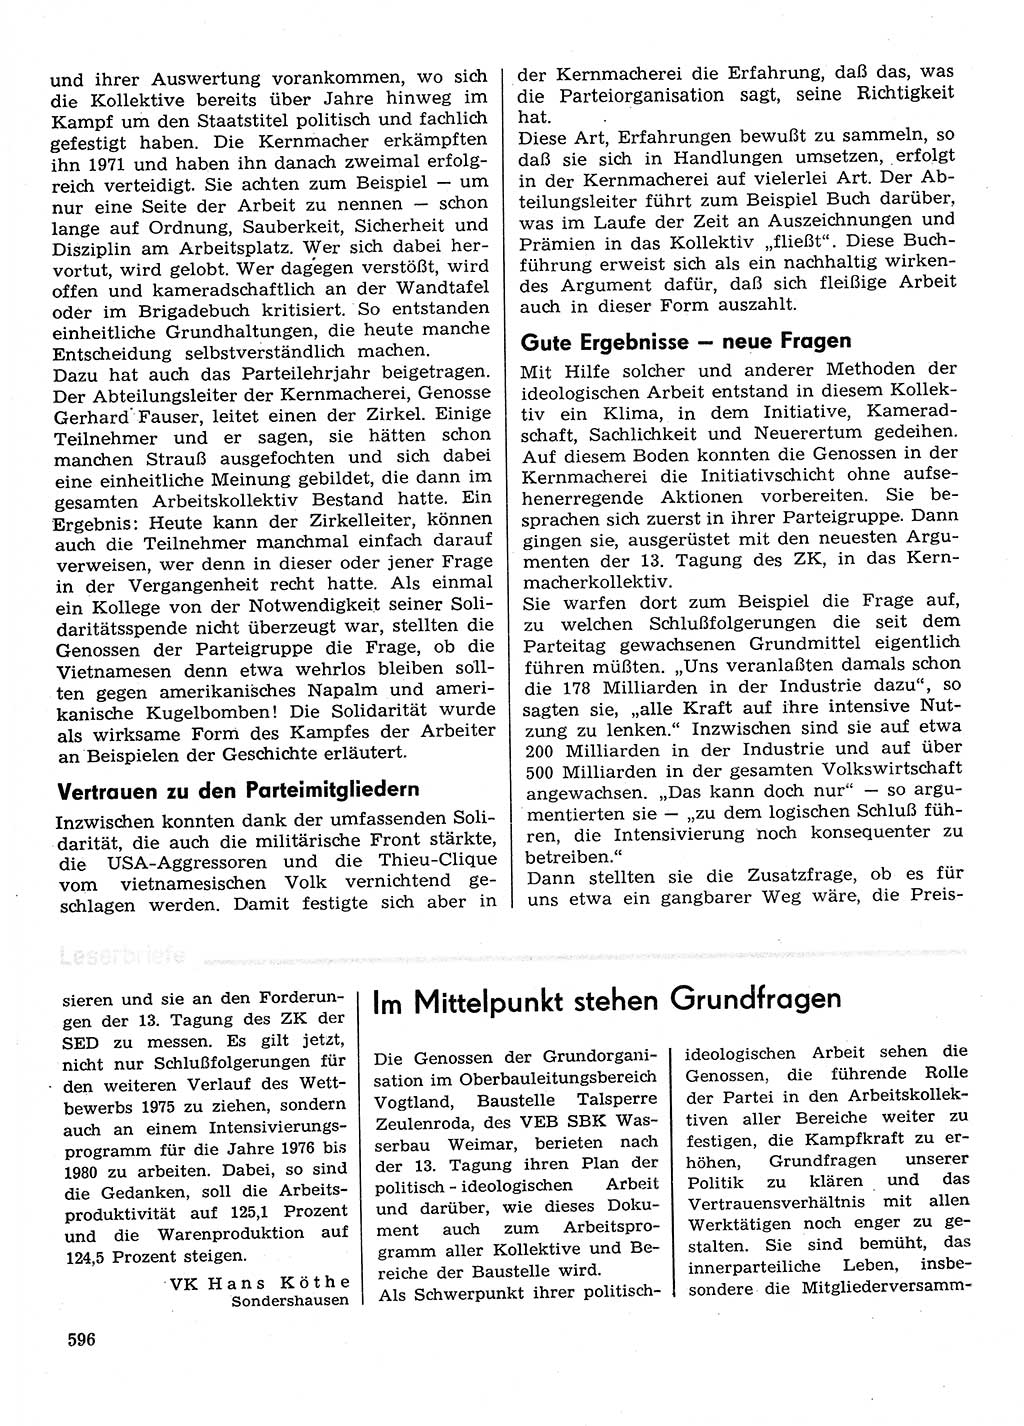 Neuer Weg (NW), Organ des Zentralkomitees (ZK) der SED (Sozialistische Einheitspartei Deutschlands) für Fragen des Parteilebens, 30. Jahrgang [Deutsche Demokratische Republik (DDR)] 1975, Seite 596 (NW ZK SED DDR 1975, S. 596)